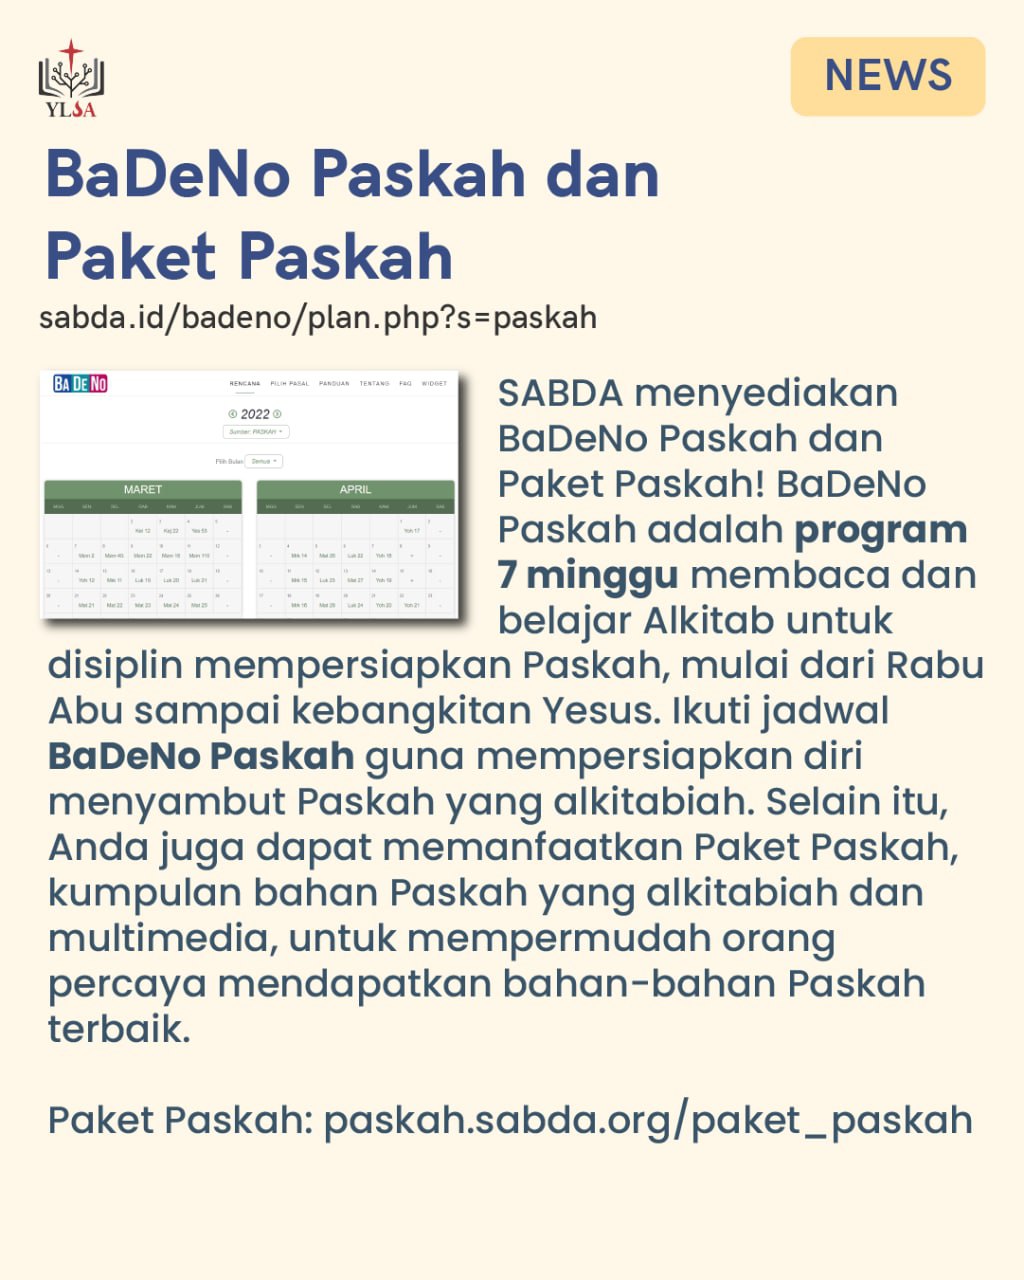 SABDA menyediakan BaDeNo Paskah dan Paket Paskah bagi gereja dan orang-orang percaya untuk mempersiapkan Paskah.